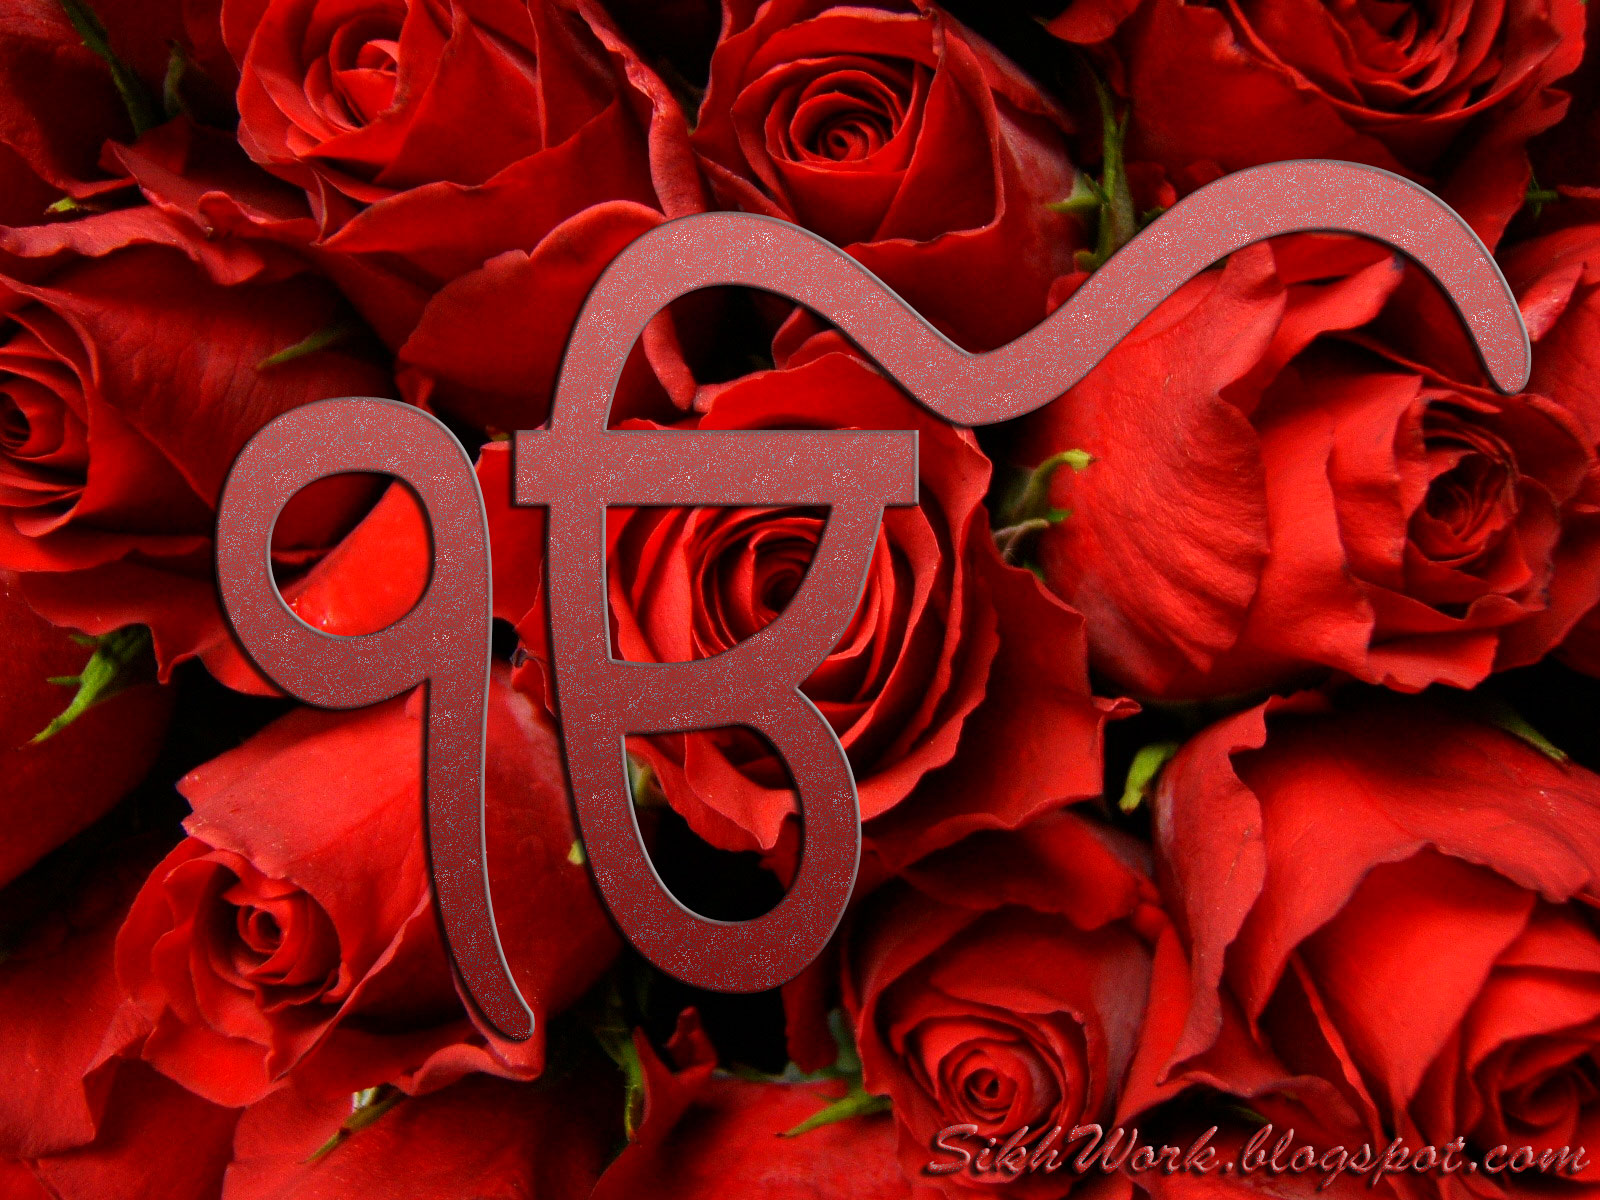 ek onkar wallpaper,garden roses,red,rose,flower,petal